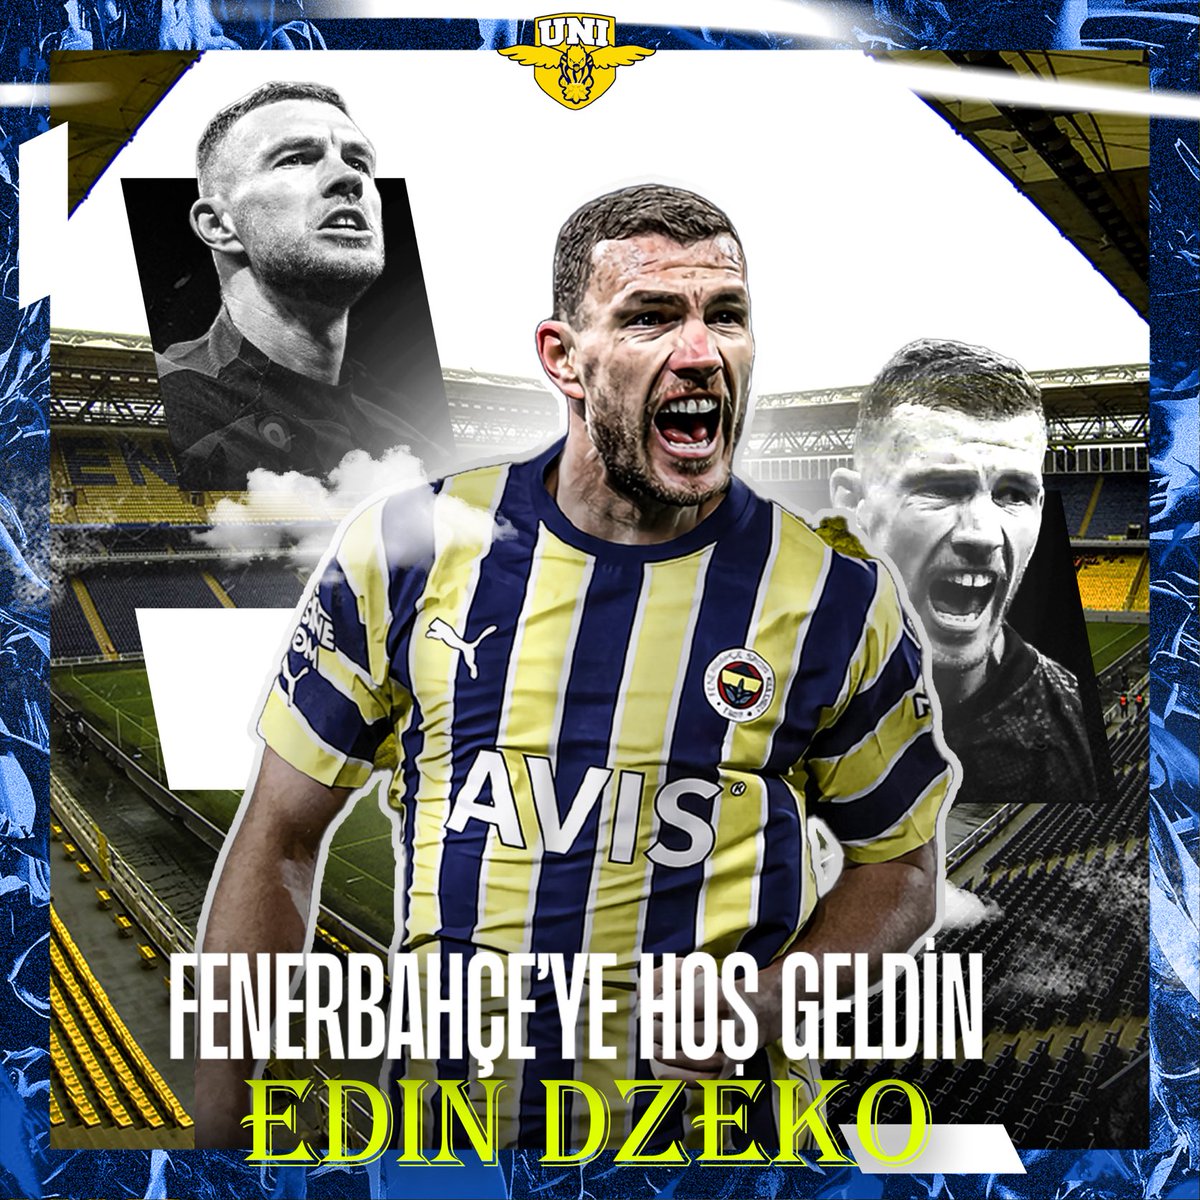 Fenerbahçemize hoş geldin Edin Dzeko! #UNIGFB